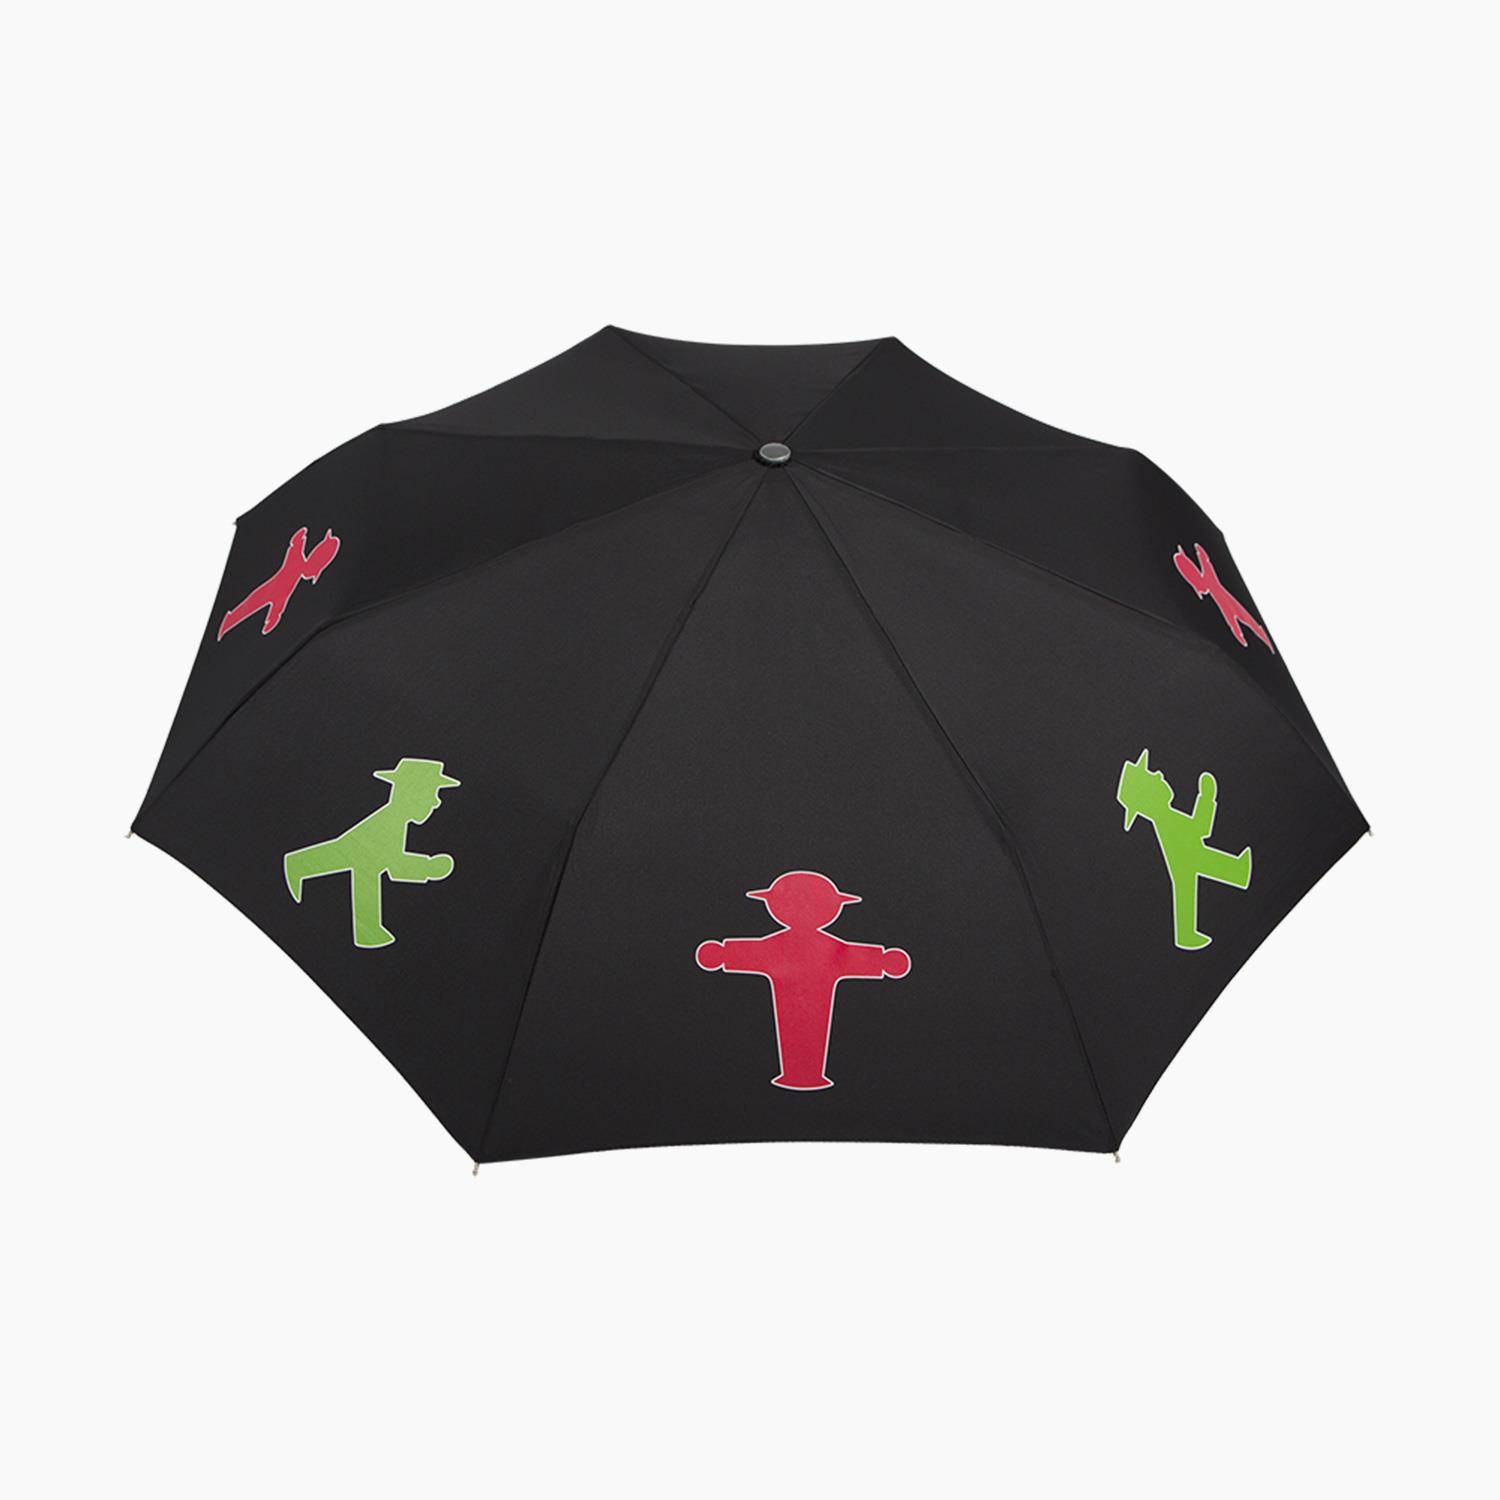 UNDERCOVER / Regenschirm